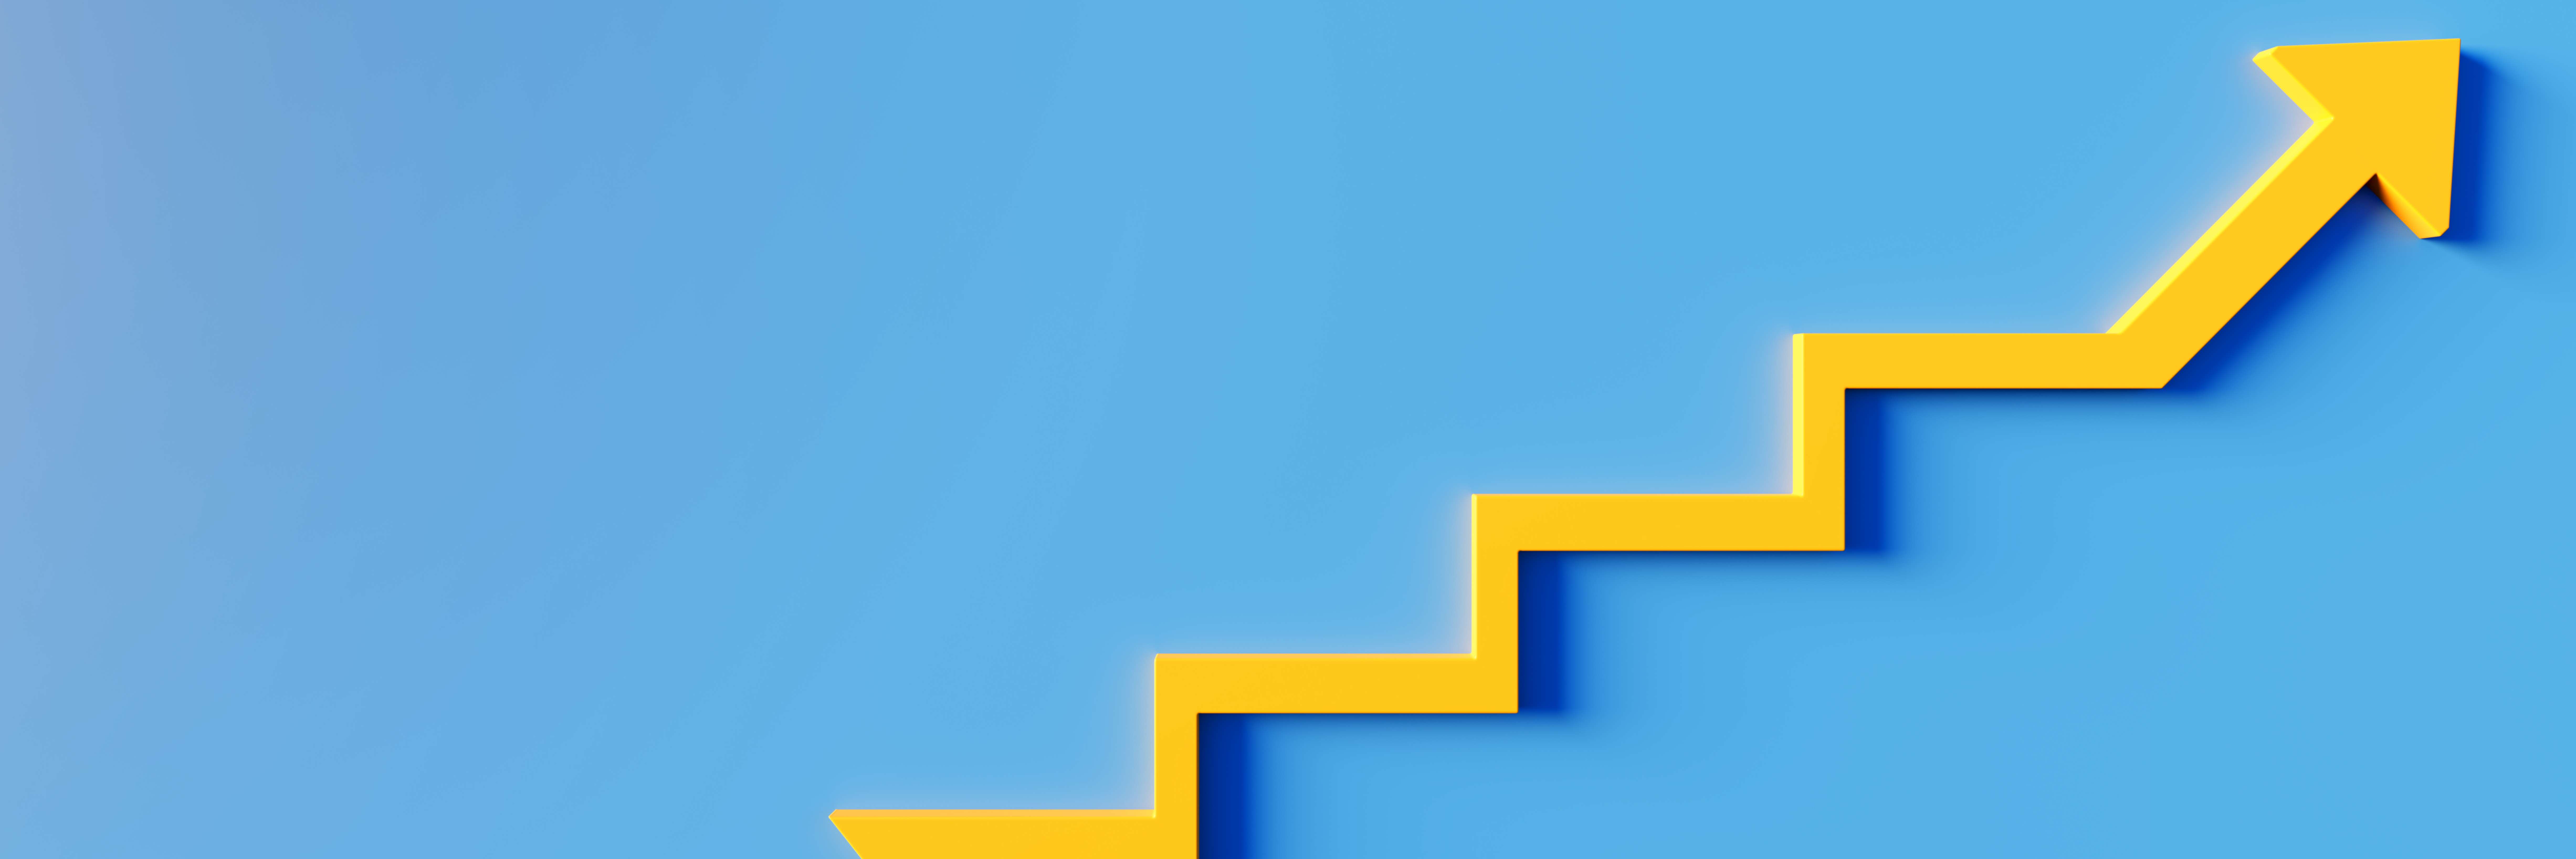 Fundo azul e uma seta amarela crescendo, em forma de escada, para a direita.